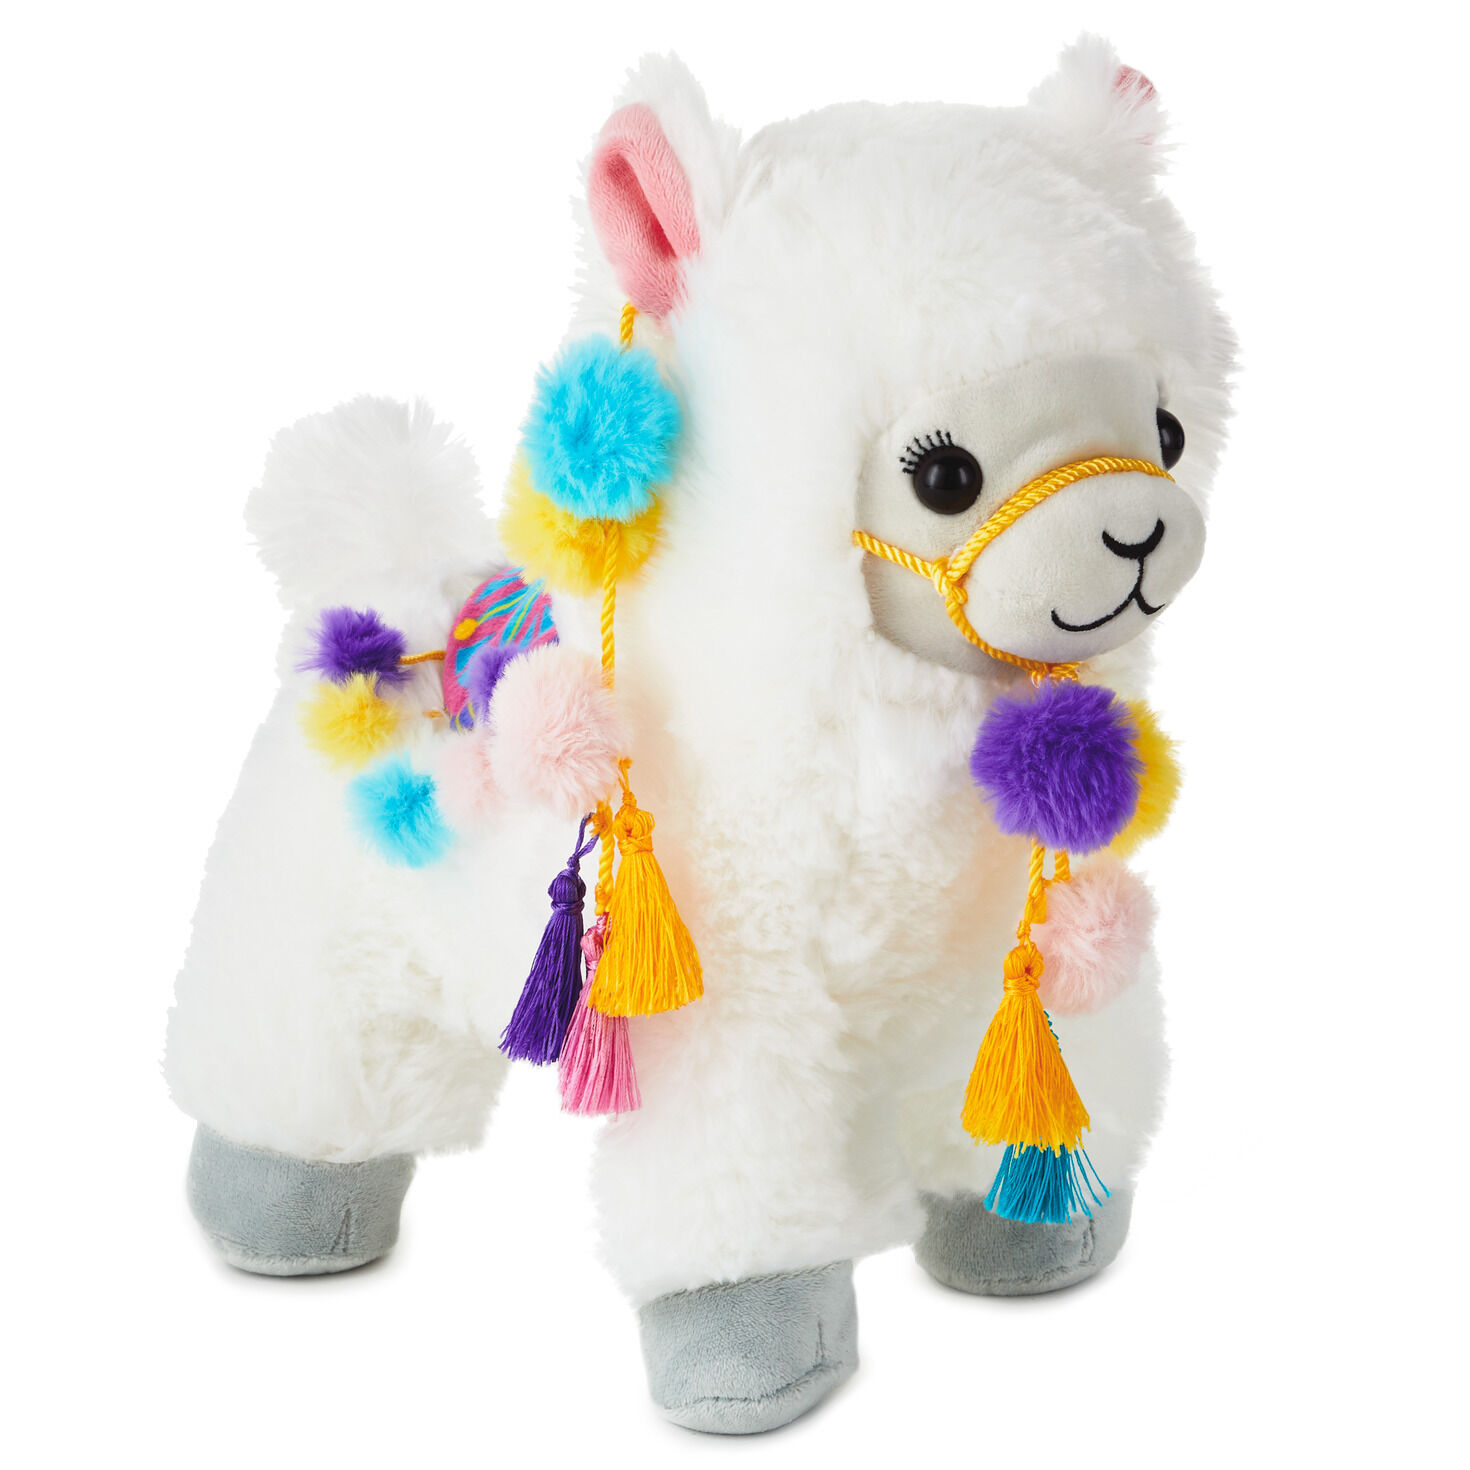 baby llama plush